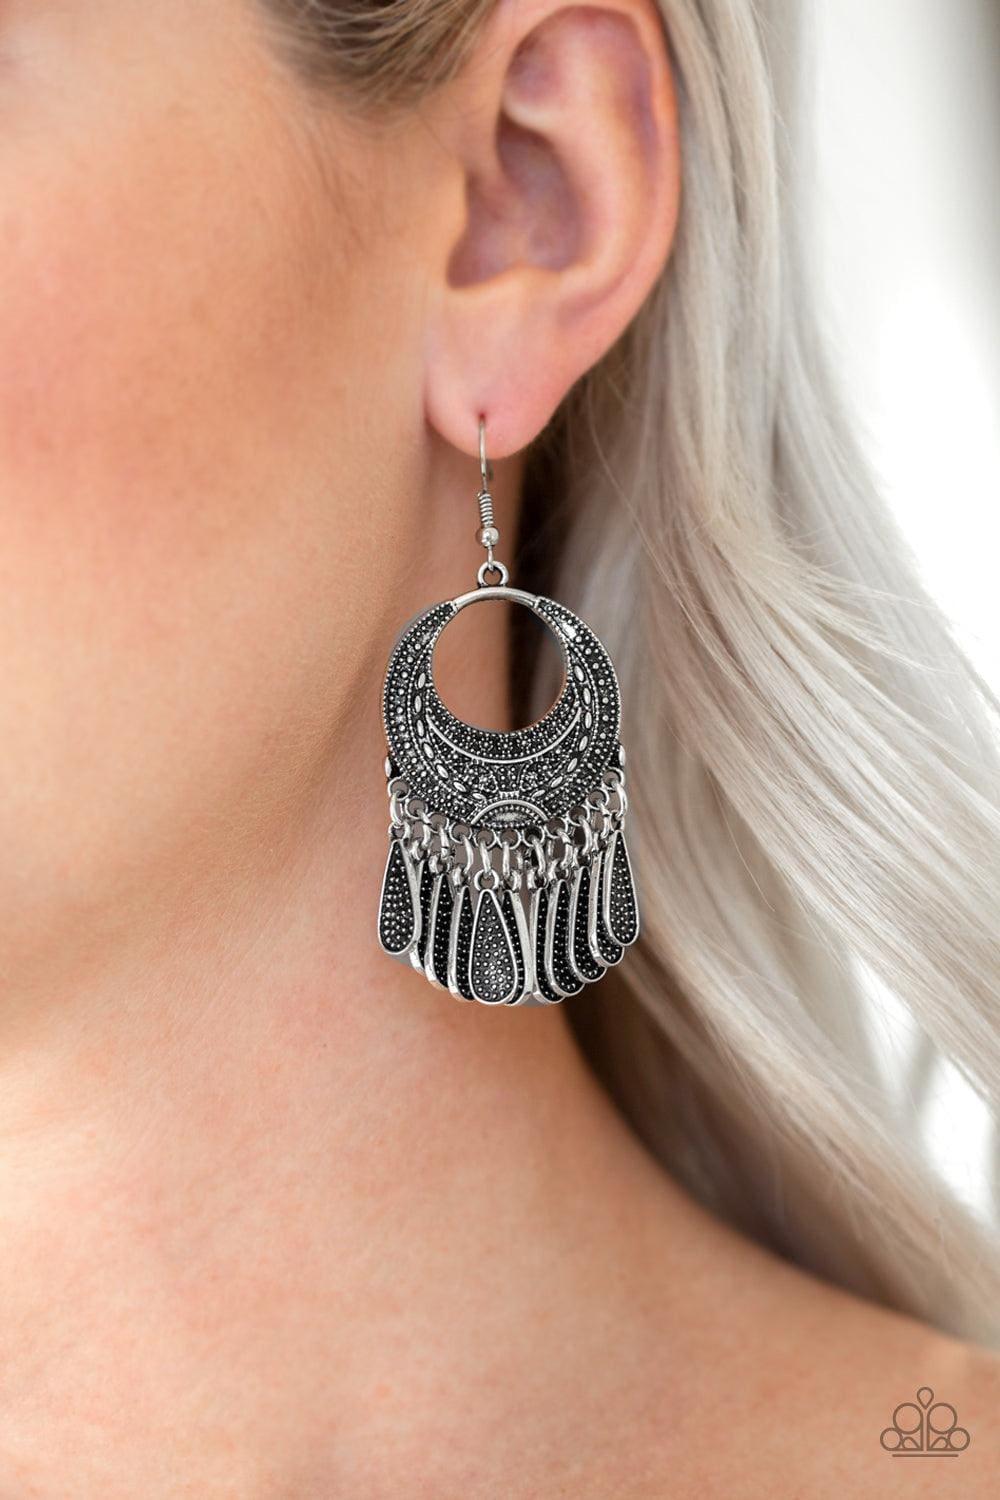 Paparazzi Accessories - Mesa Majesty - Silver Earrings - Bling by JessieK